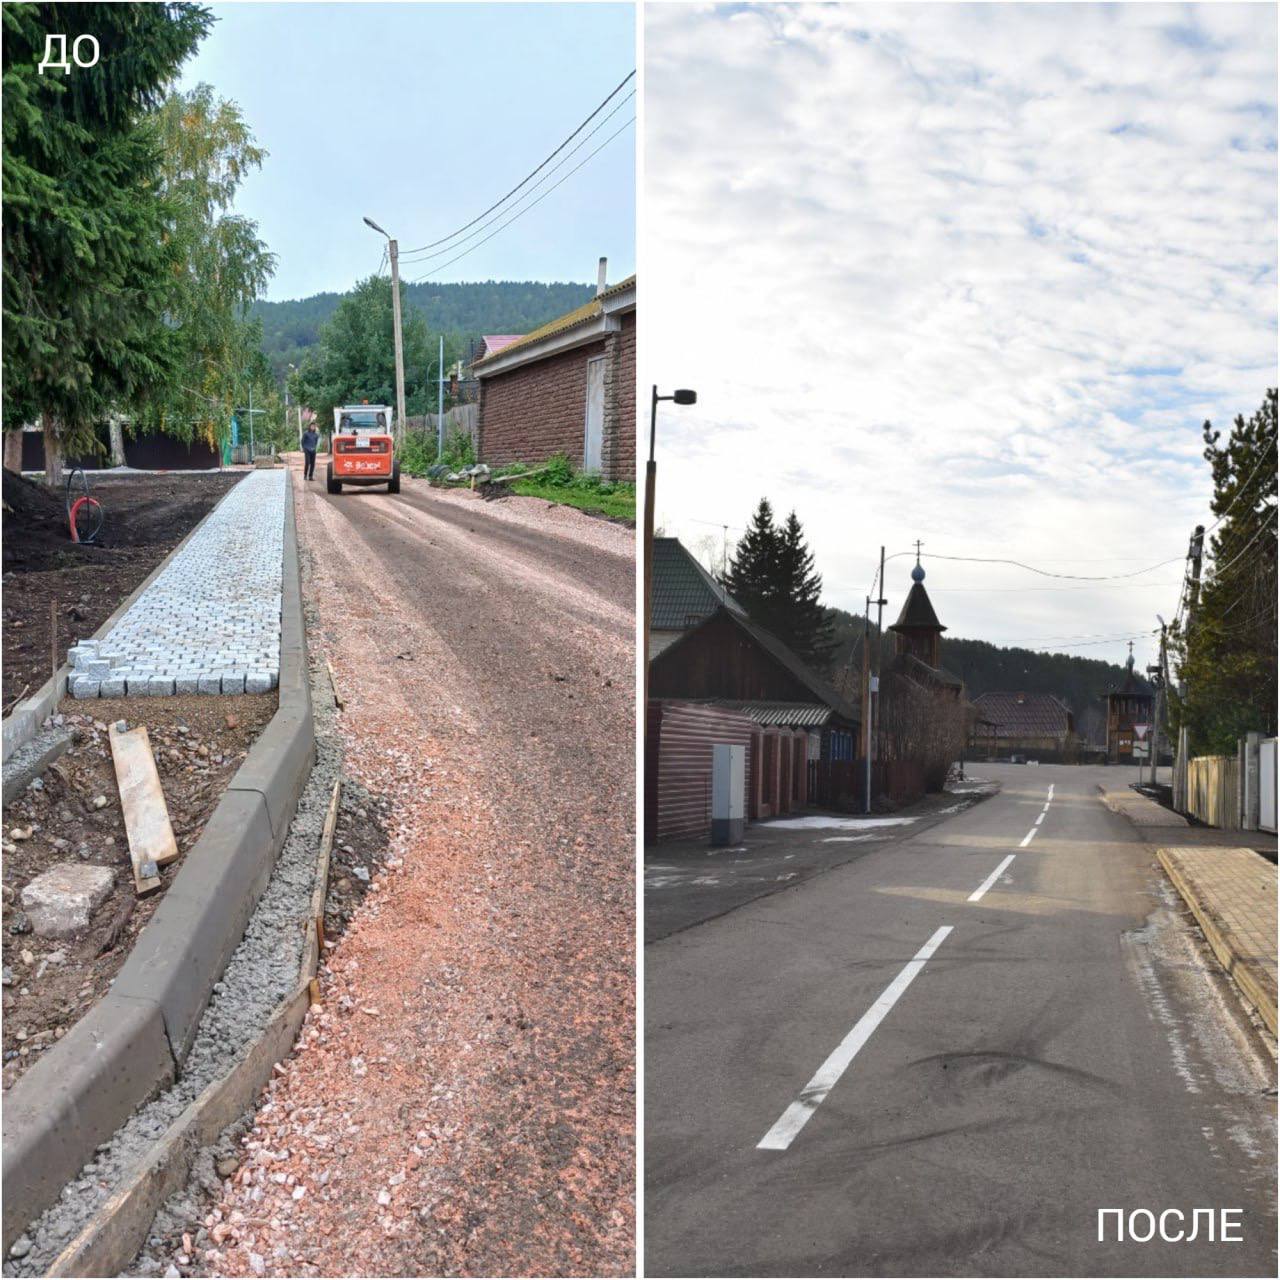 Ремонт дорог в Овсянке. Фото до и после вмешательства прокуратуры